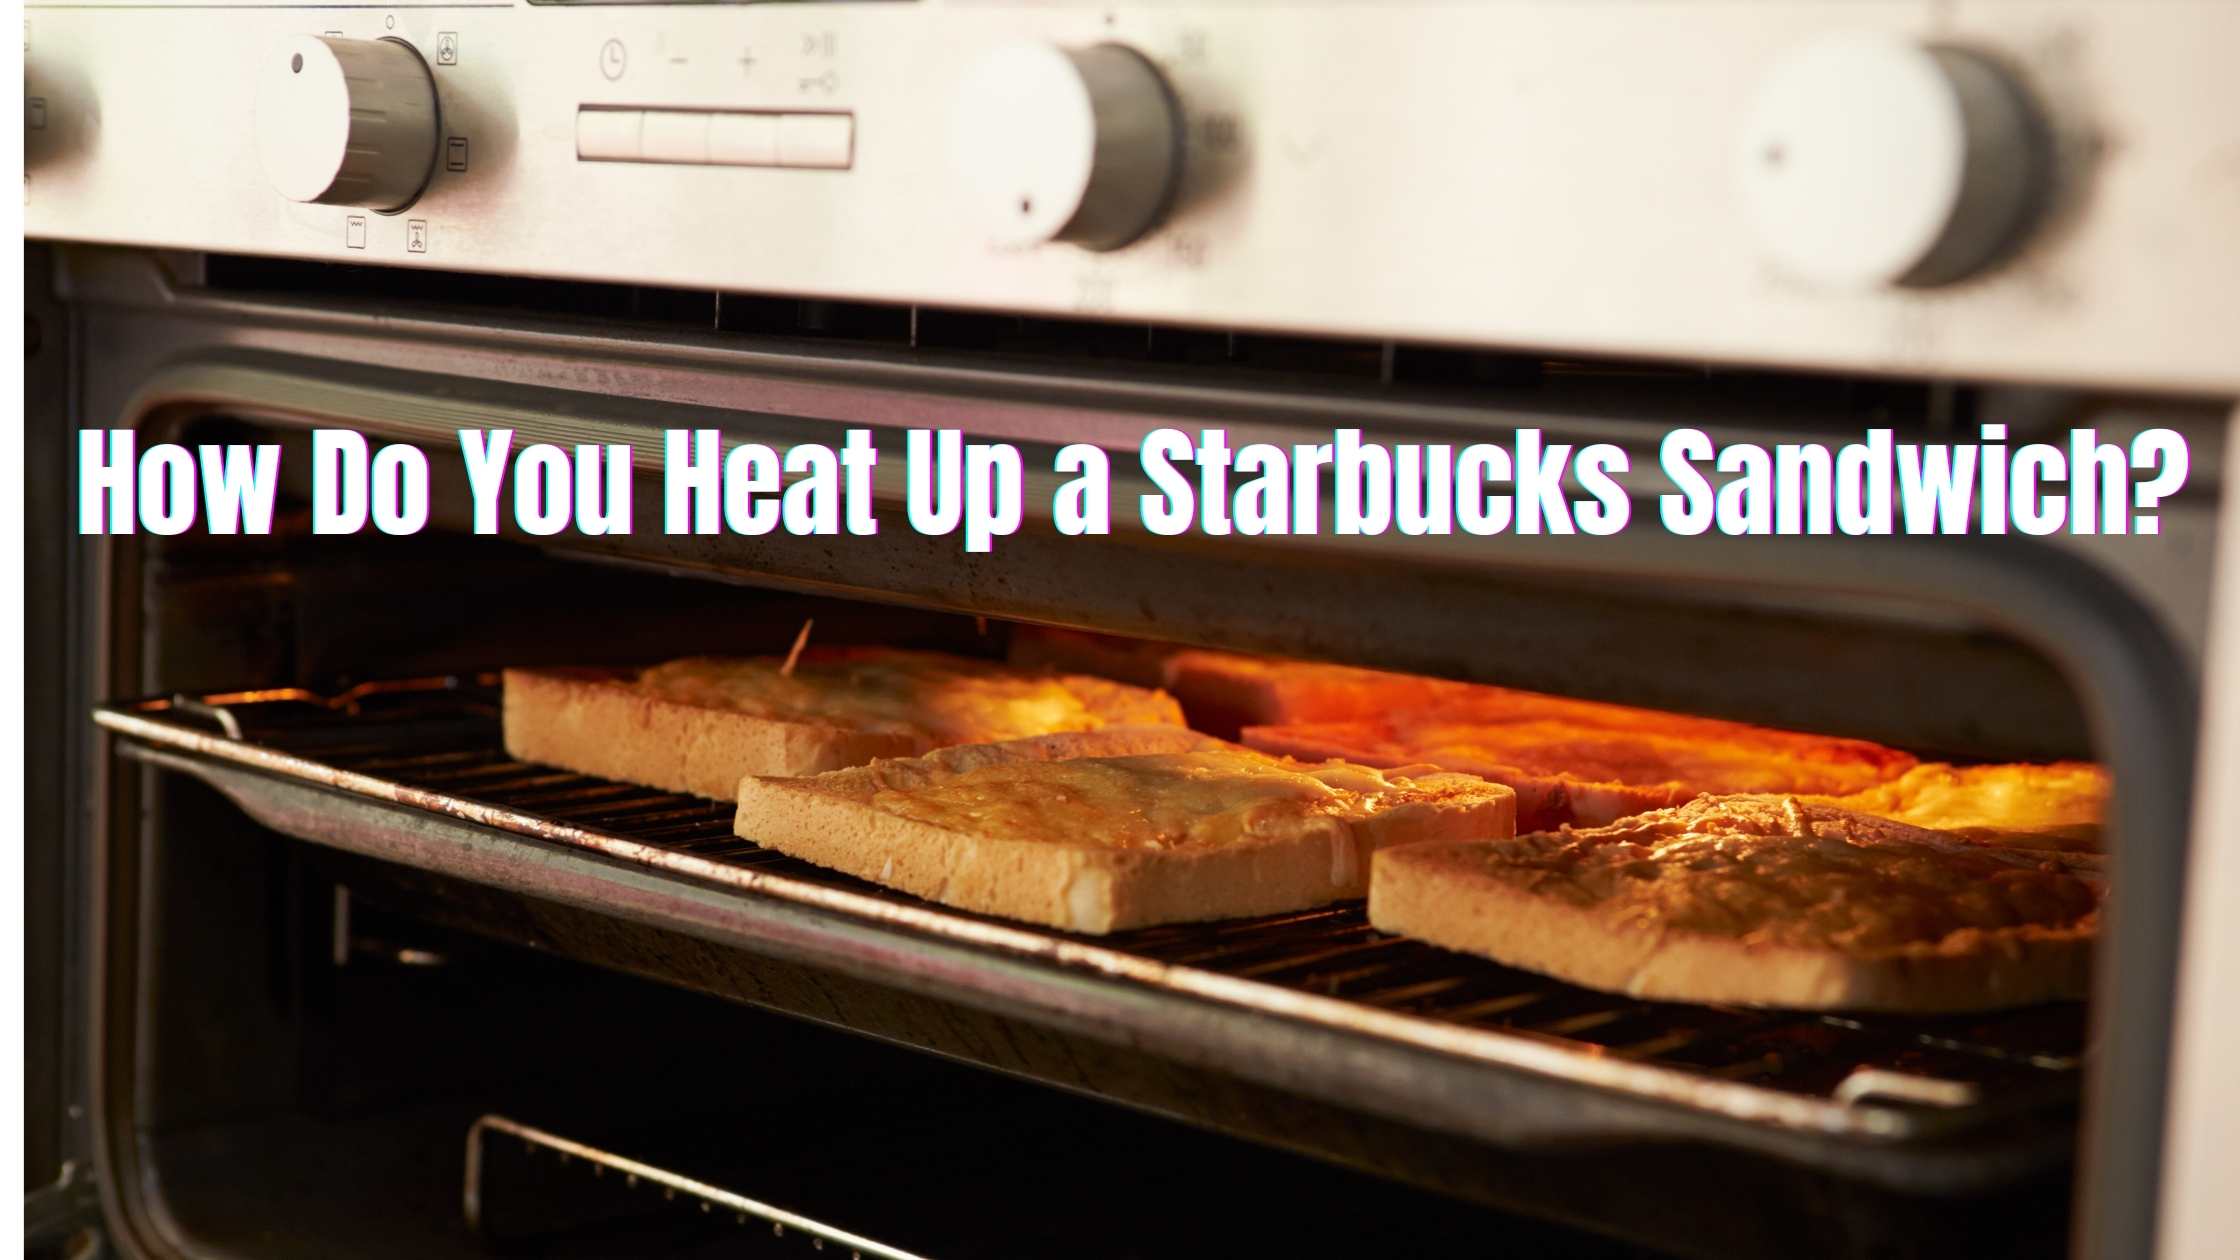 How Do You Heat Up a Starbucks Sandwich?